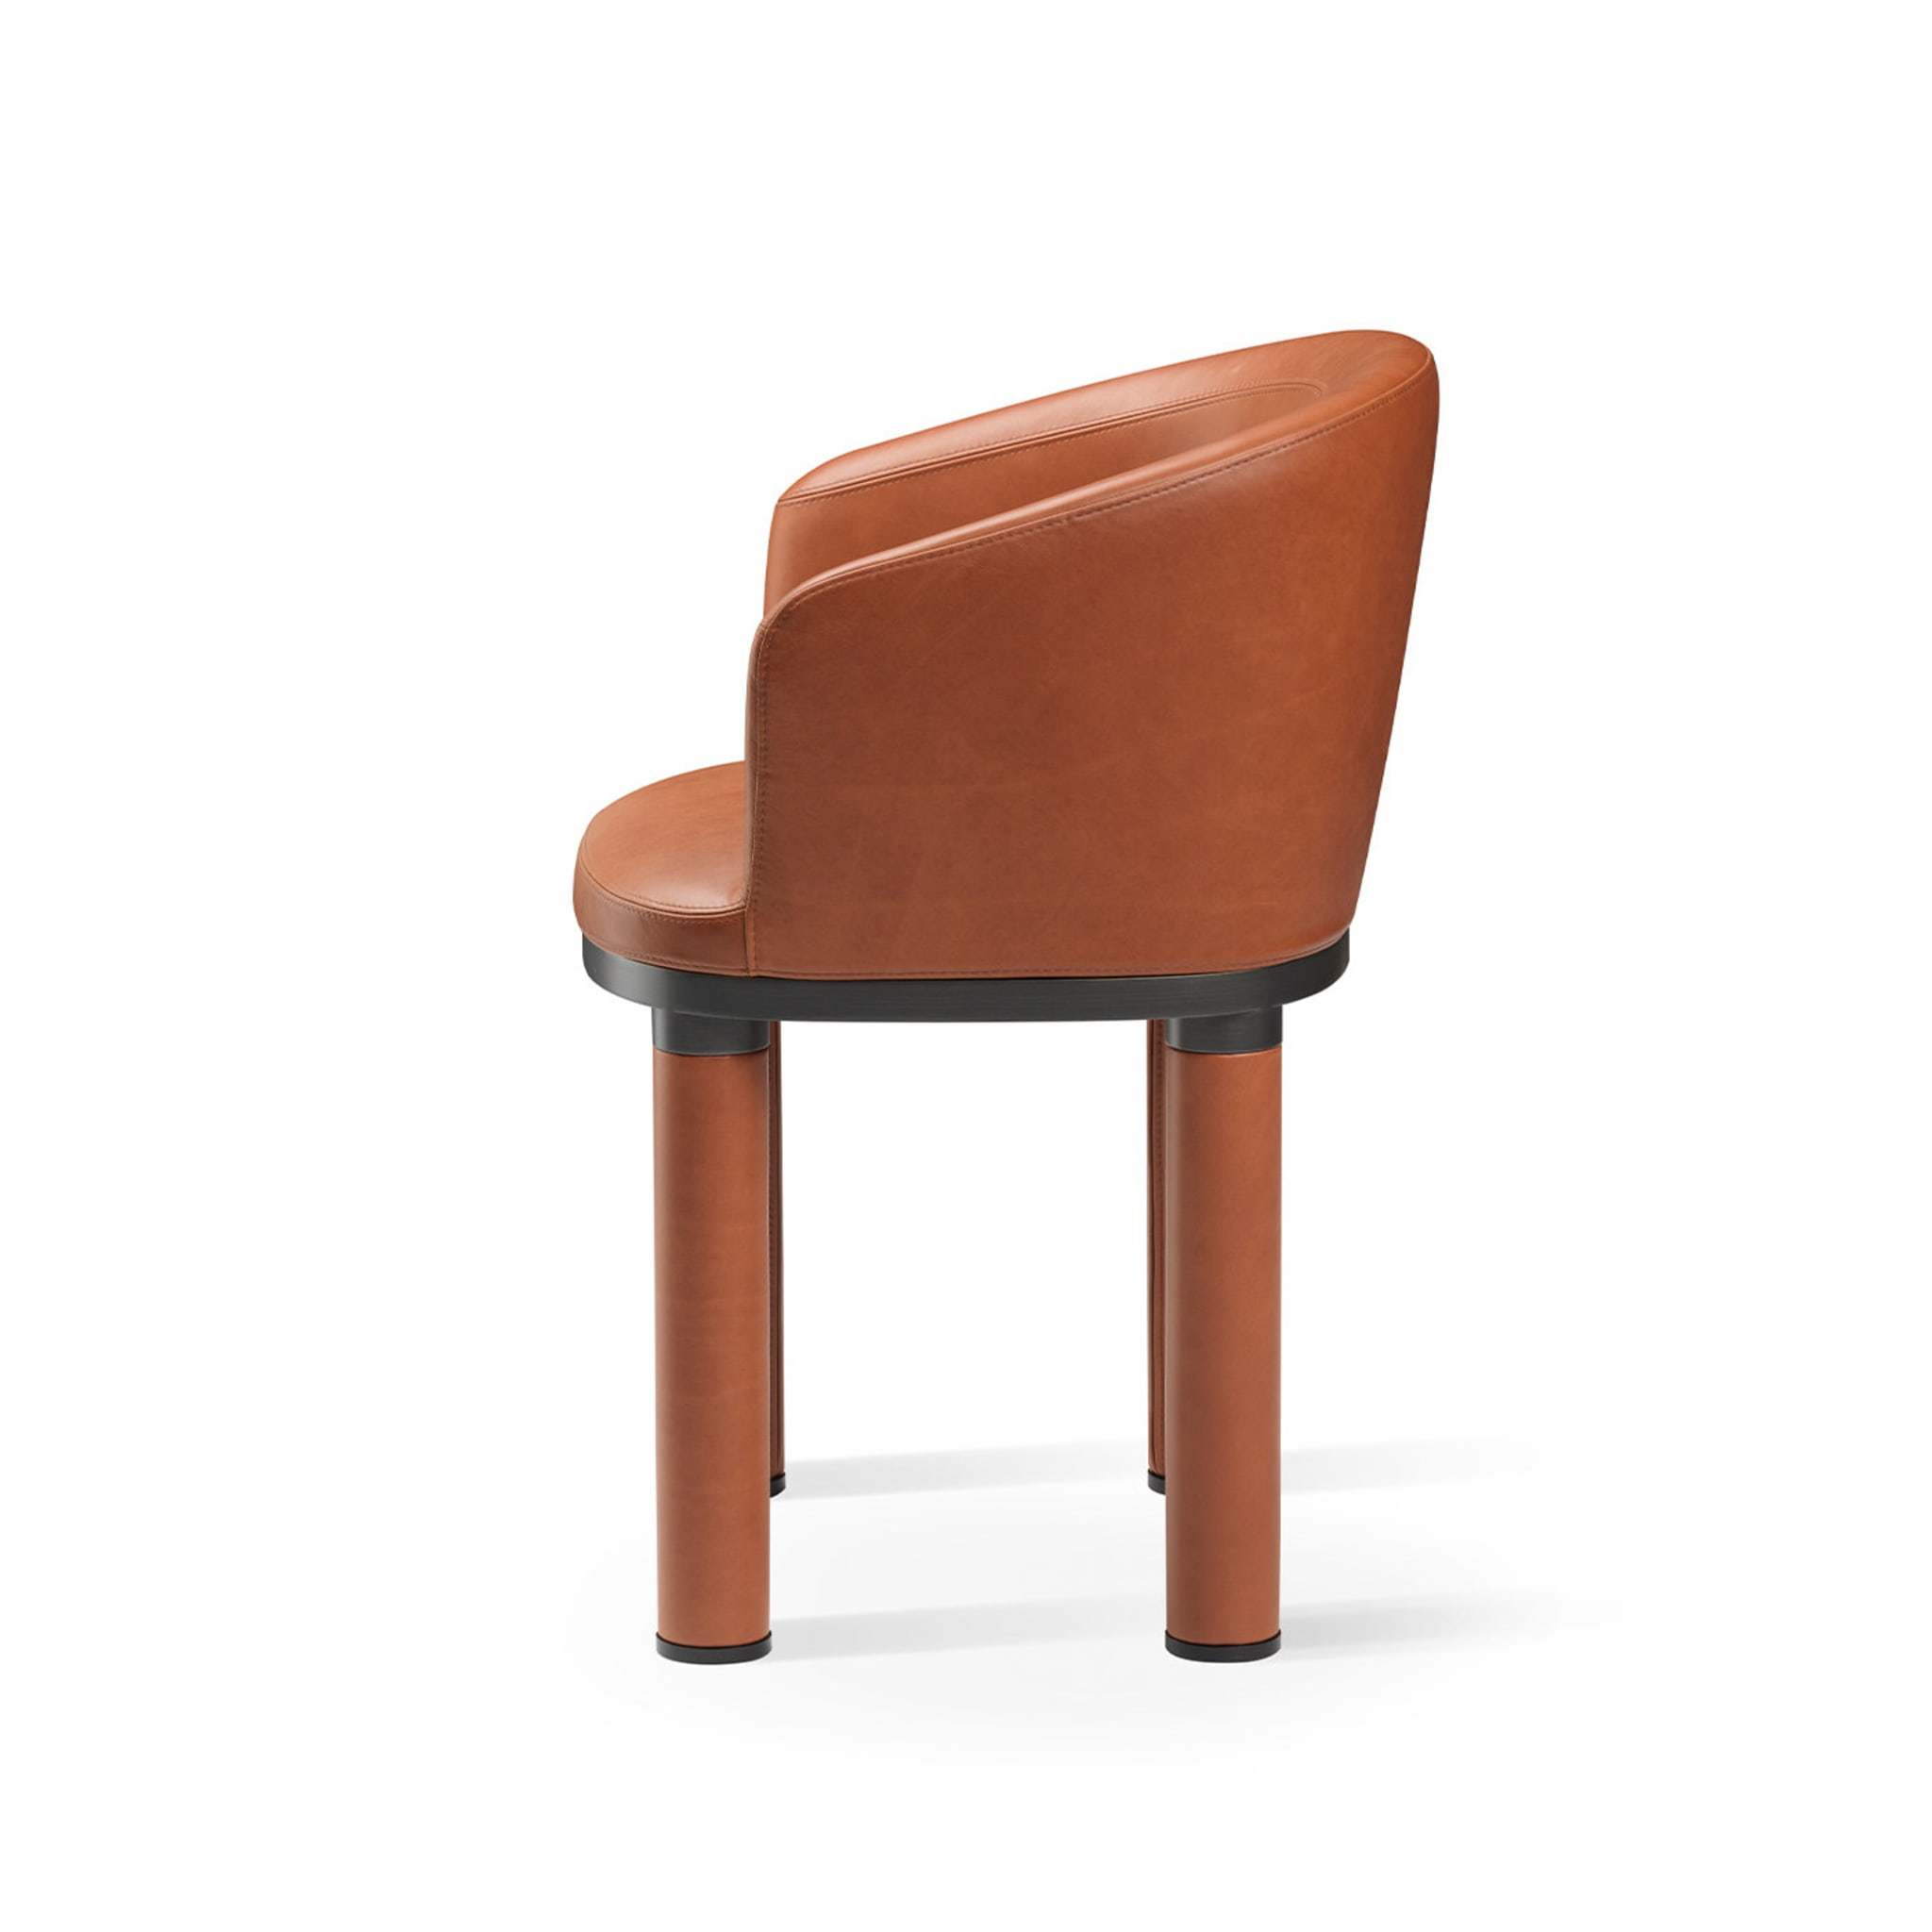 Bold Orange Chair - Alternative view 3